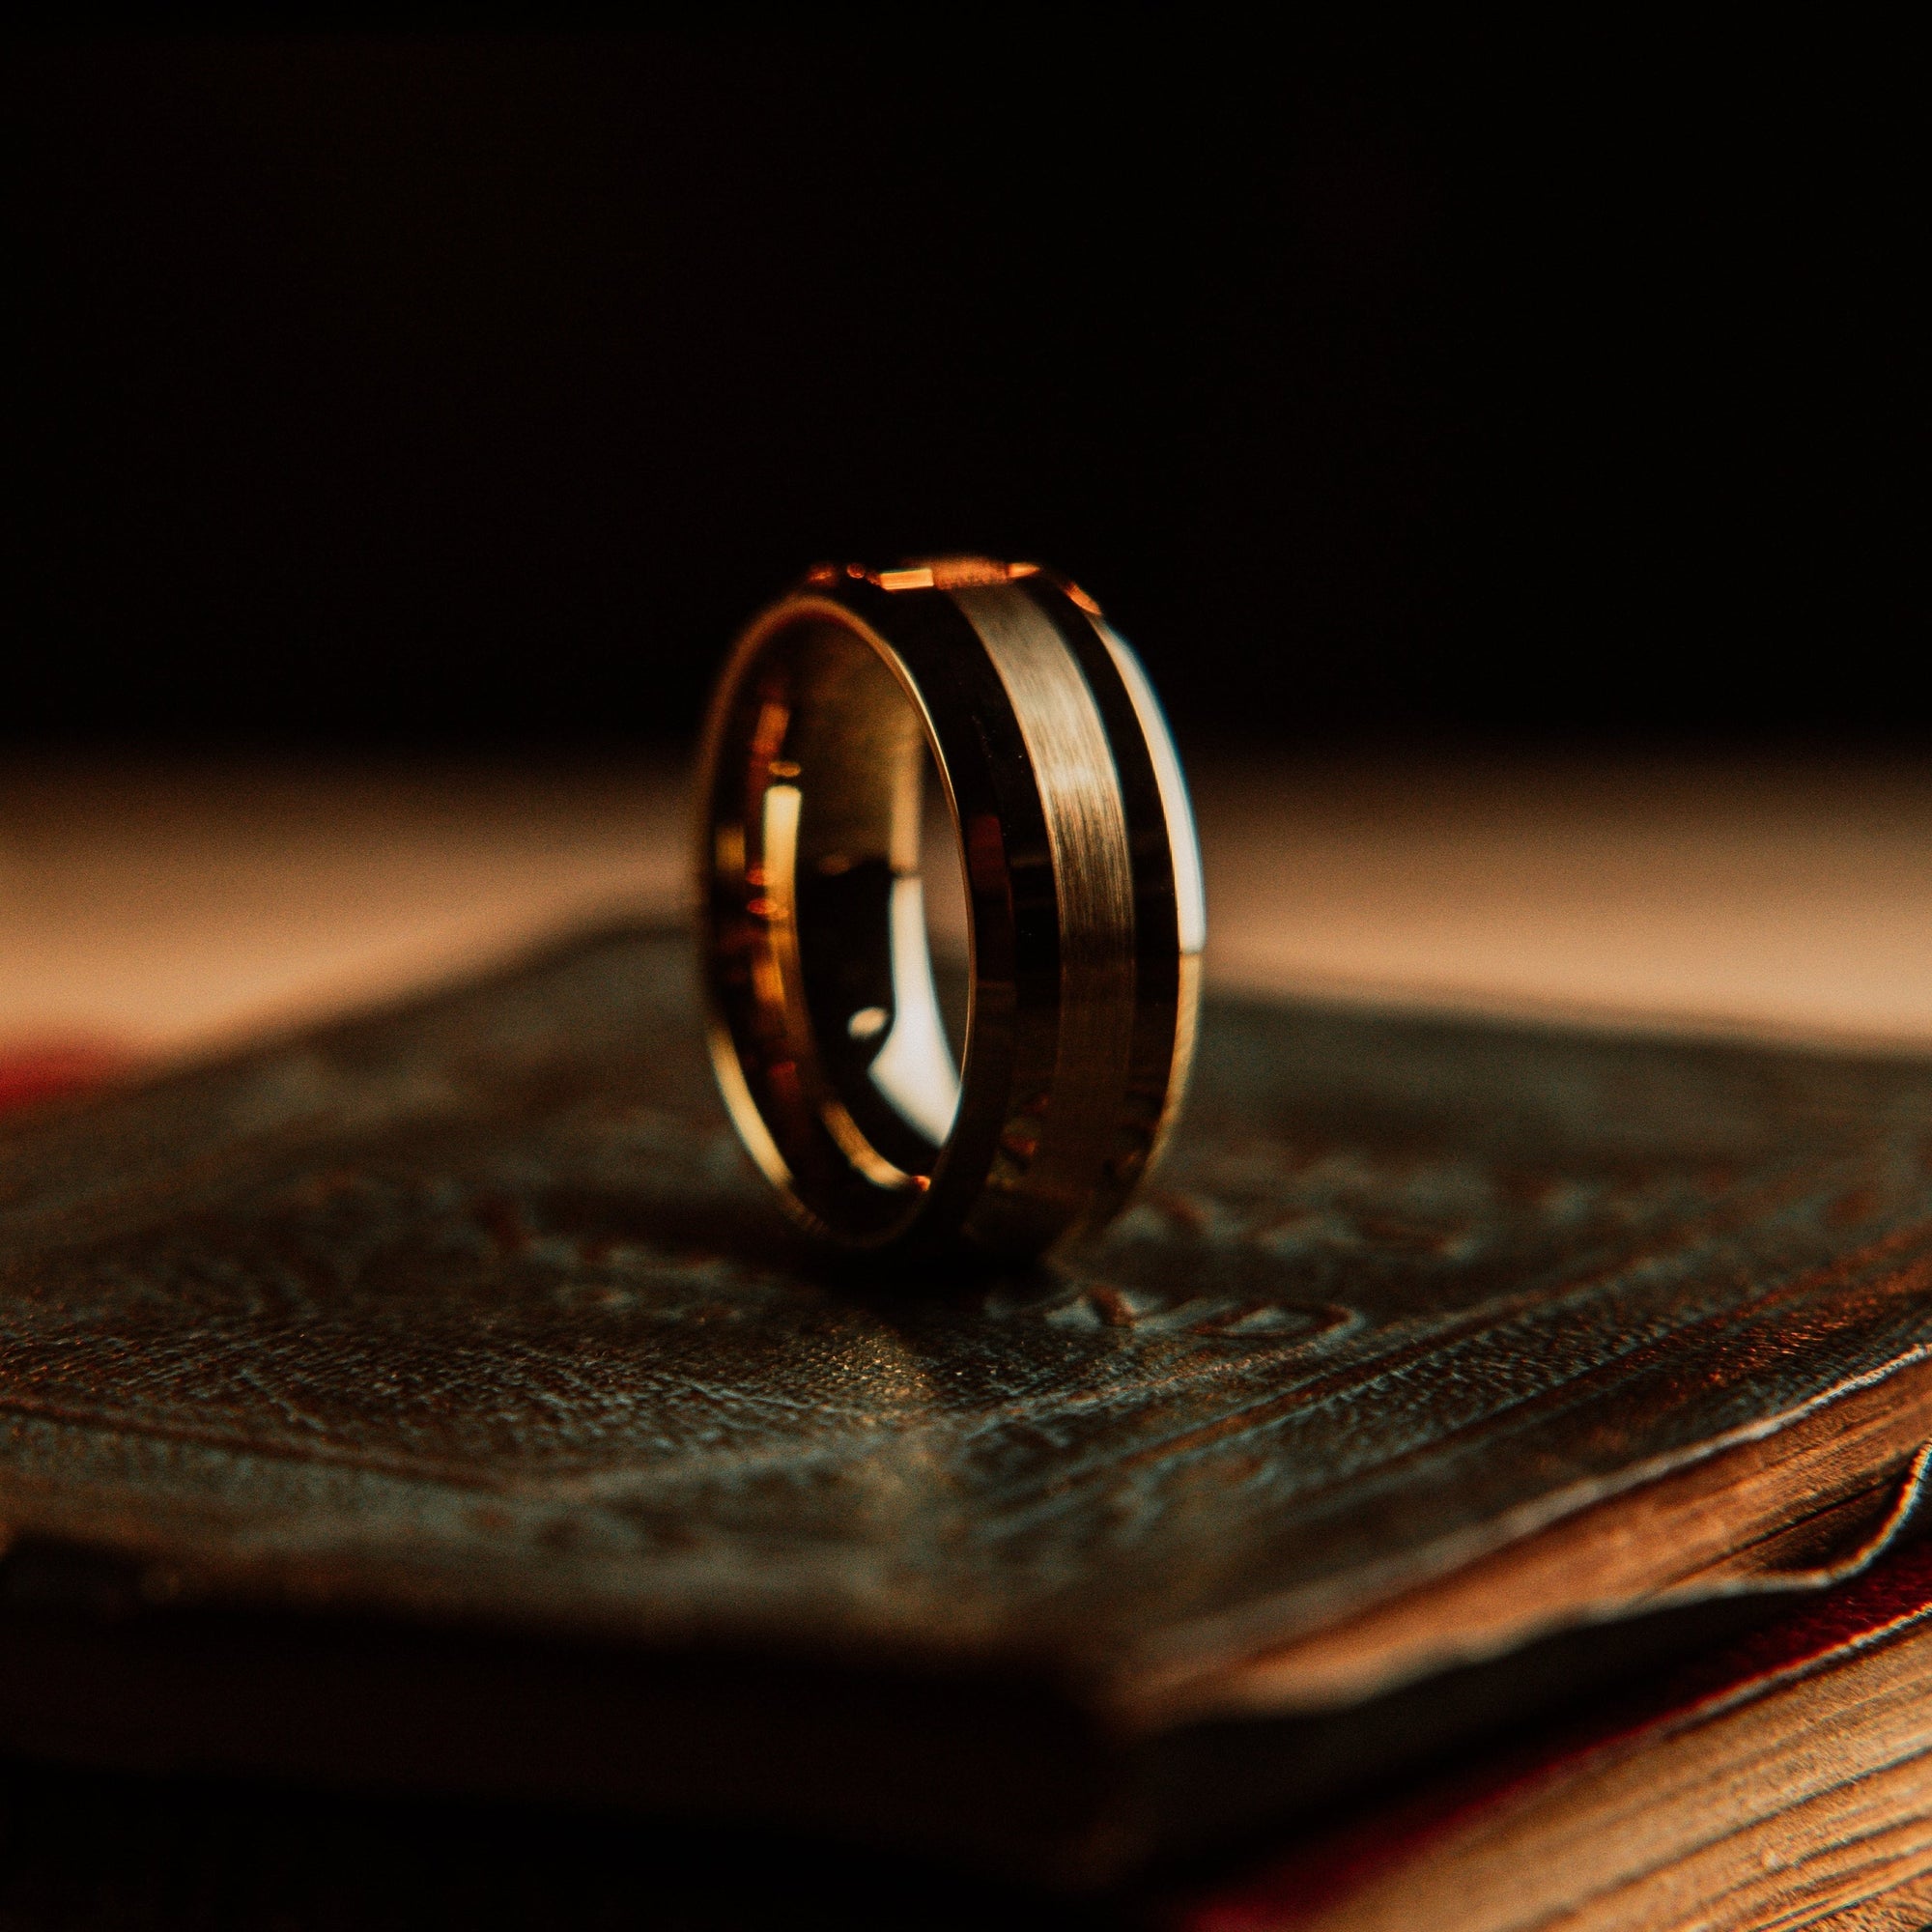 The "Gentleman" Ring